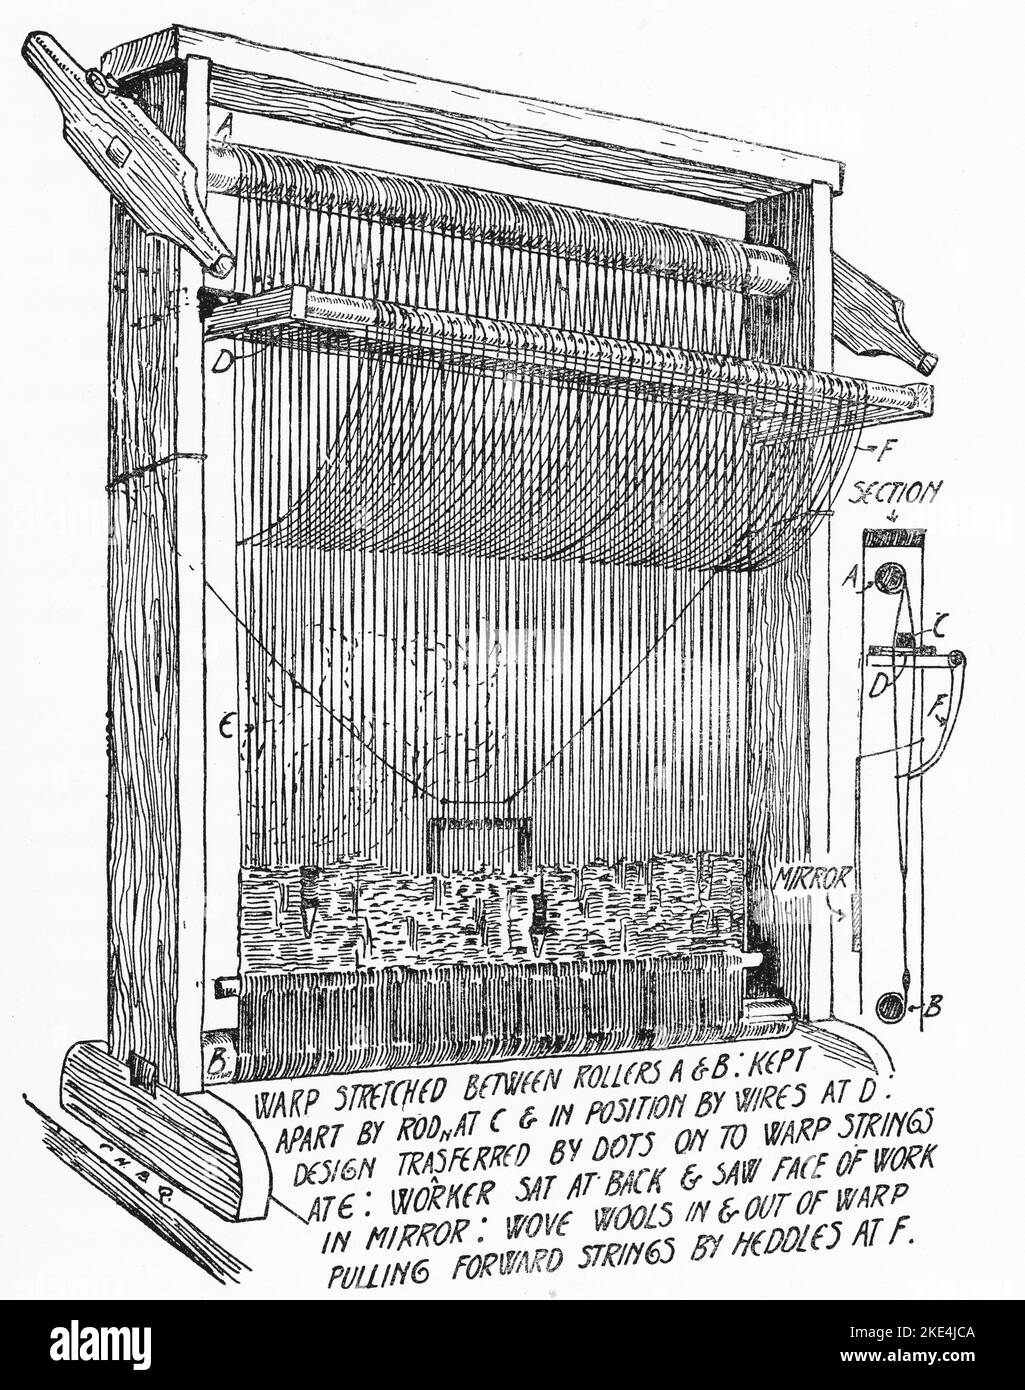 Eine Illustration eines Miniatur-Webstuhls, von William Morris (1834-1896). Illustration von C. H. B. Quennell (1872-1935). Morris war ein englischer Textildesigner, Künstler und Schriftsteller. Der prominente Sozialist war eng mit der Pre-Raphaelite Brotherhood und der englischen Arts and Crafts Movement verbunden. Stockfoto